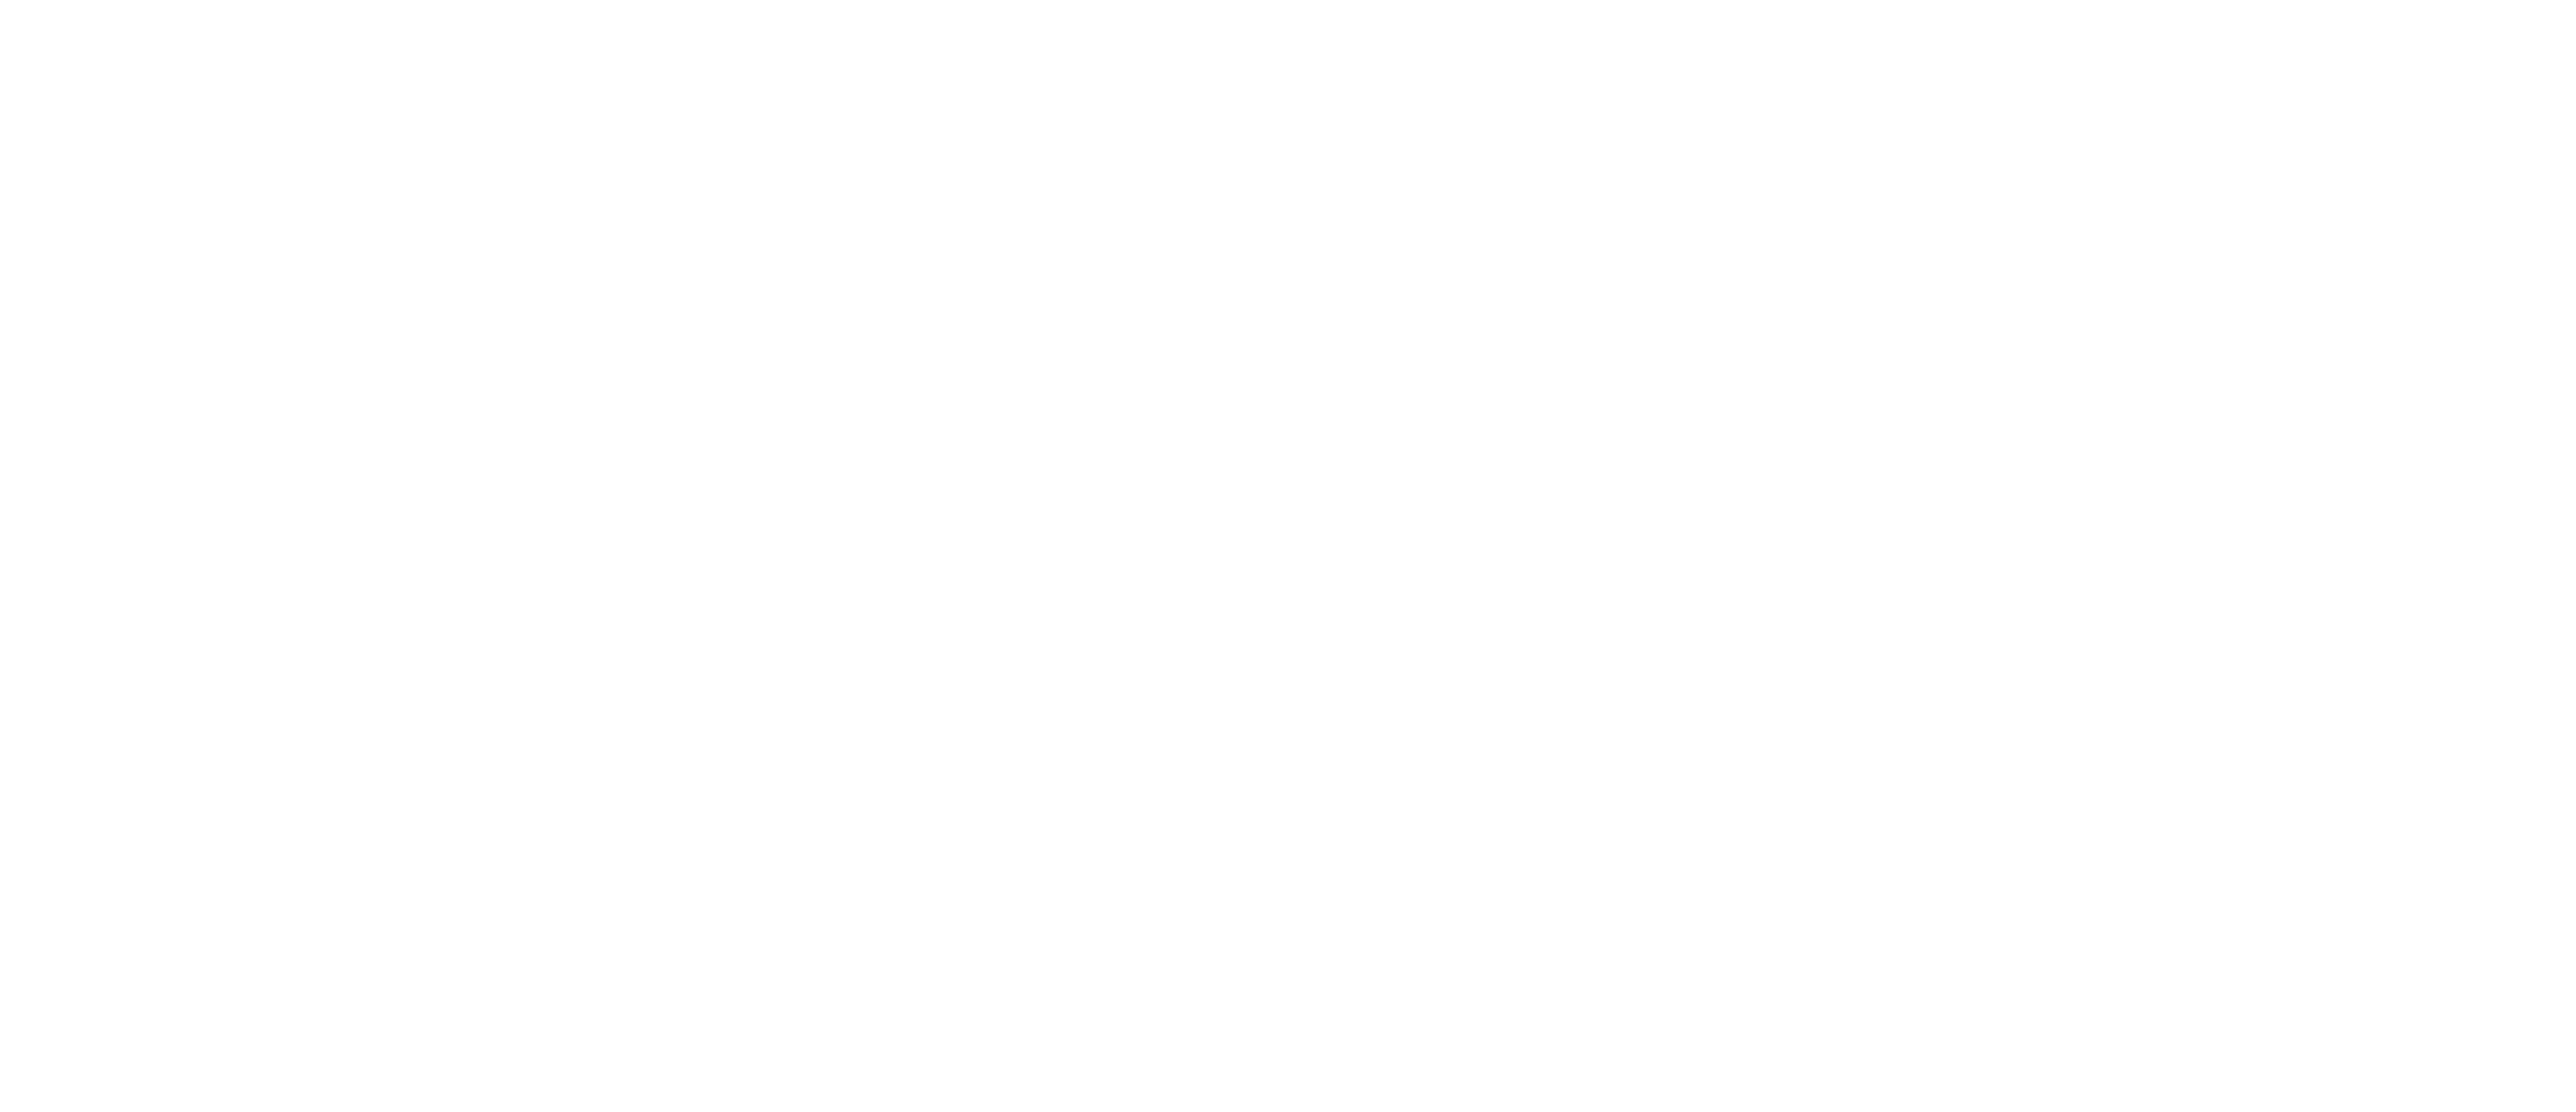 D.velop Gold Partner Logo